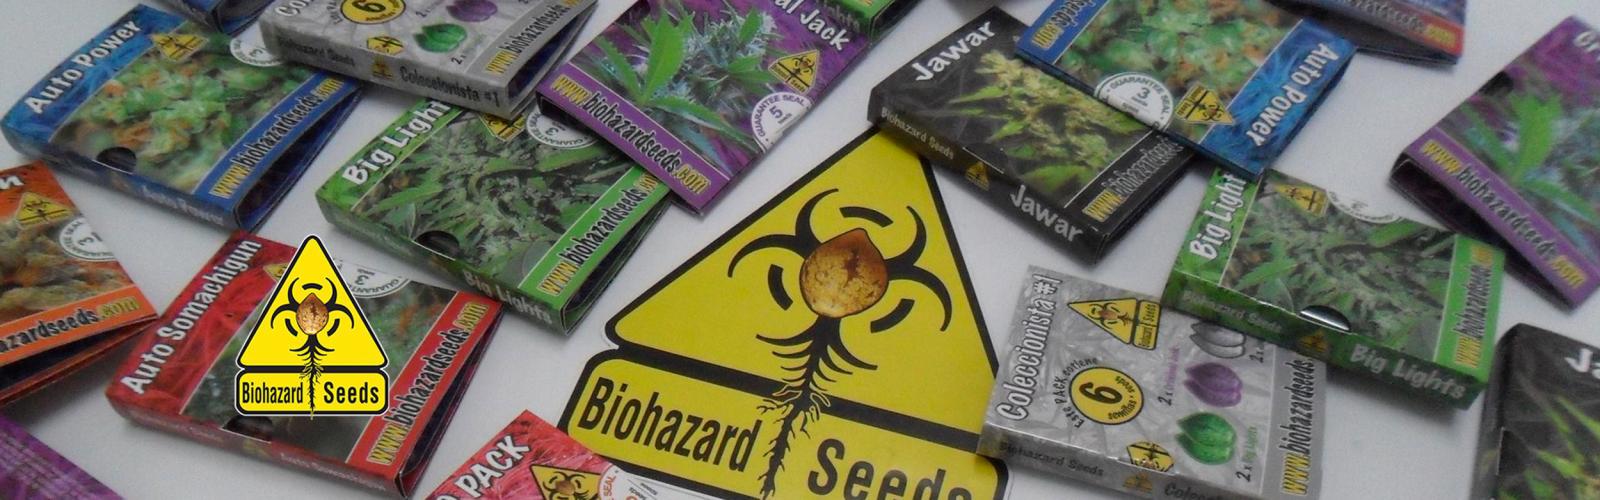 Graines de Cannabis Biohazard Seeds